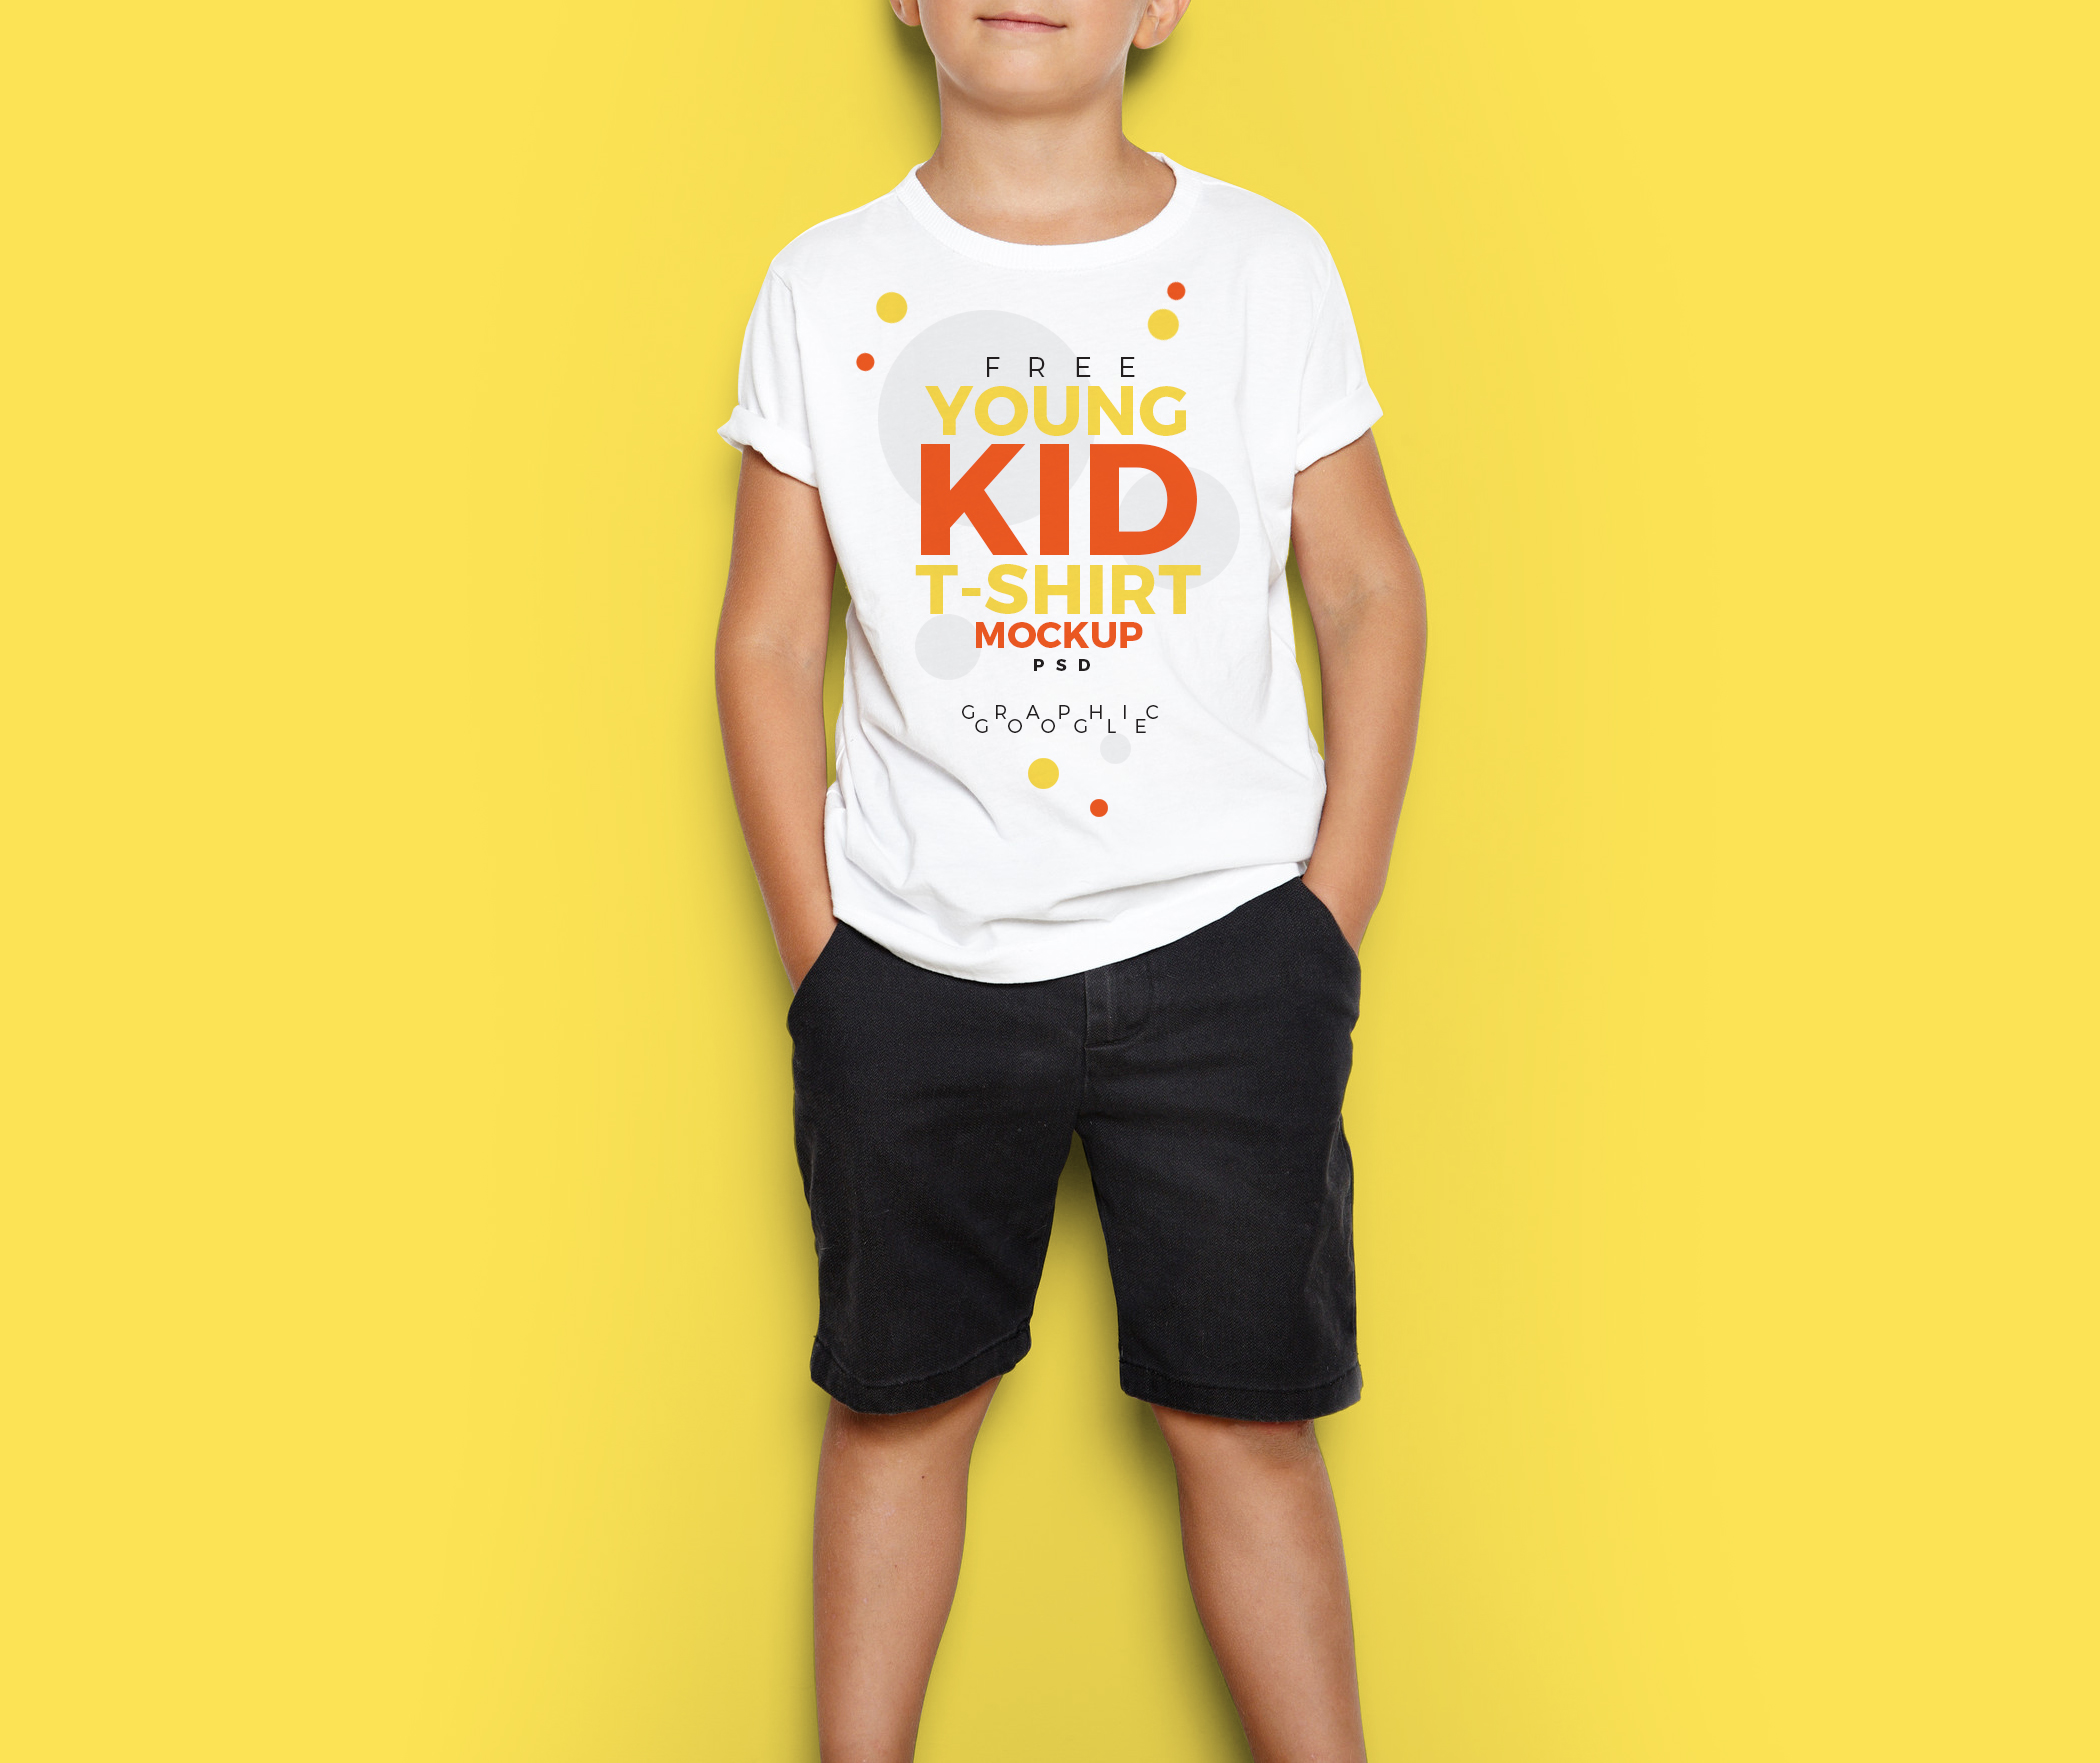 Free Young Kid T-Shirt MockUp PSD